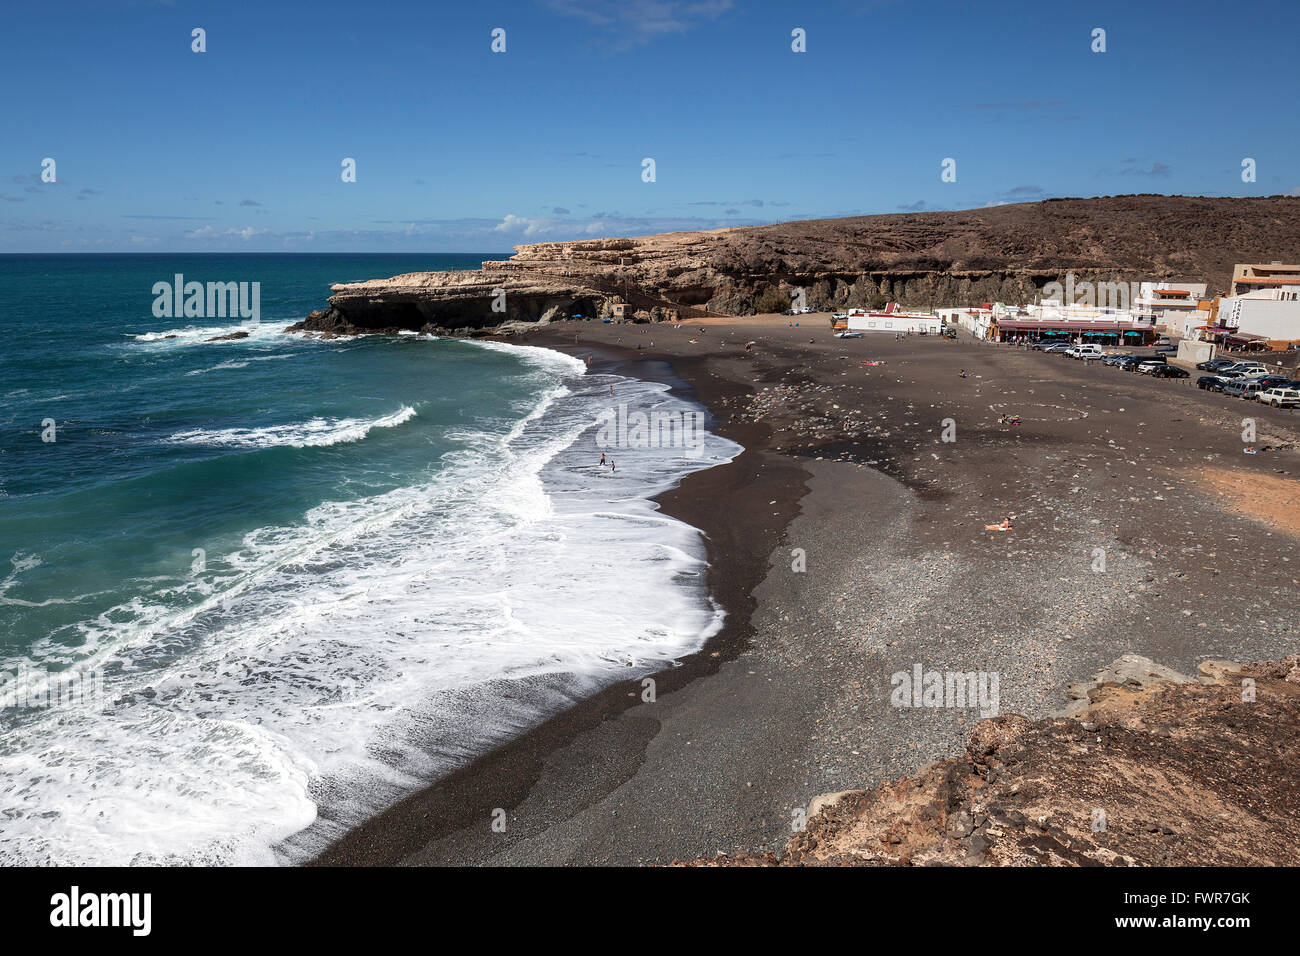 Village de pêcheurs Ajuy à la plage Playa de los Muertos, panorama, Fuerteventura, Îles Canaries, Espagne Banque D'Images